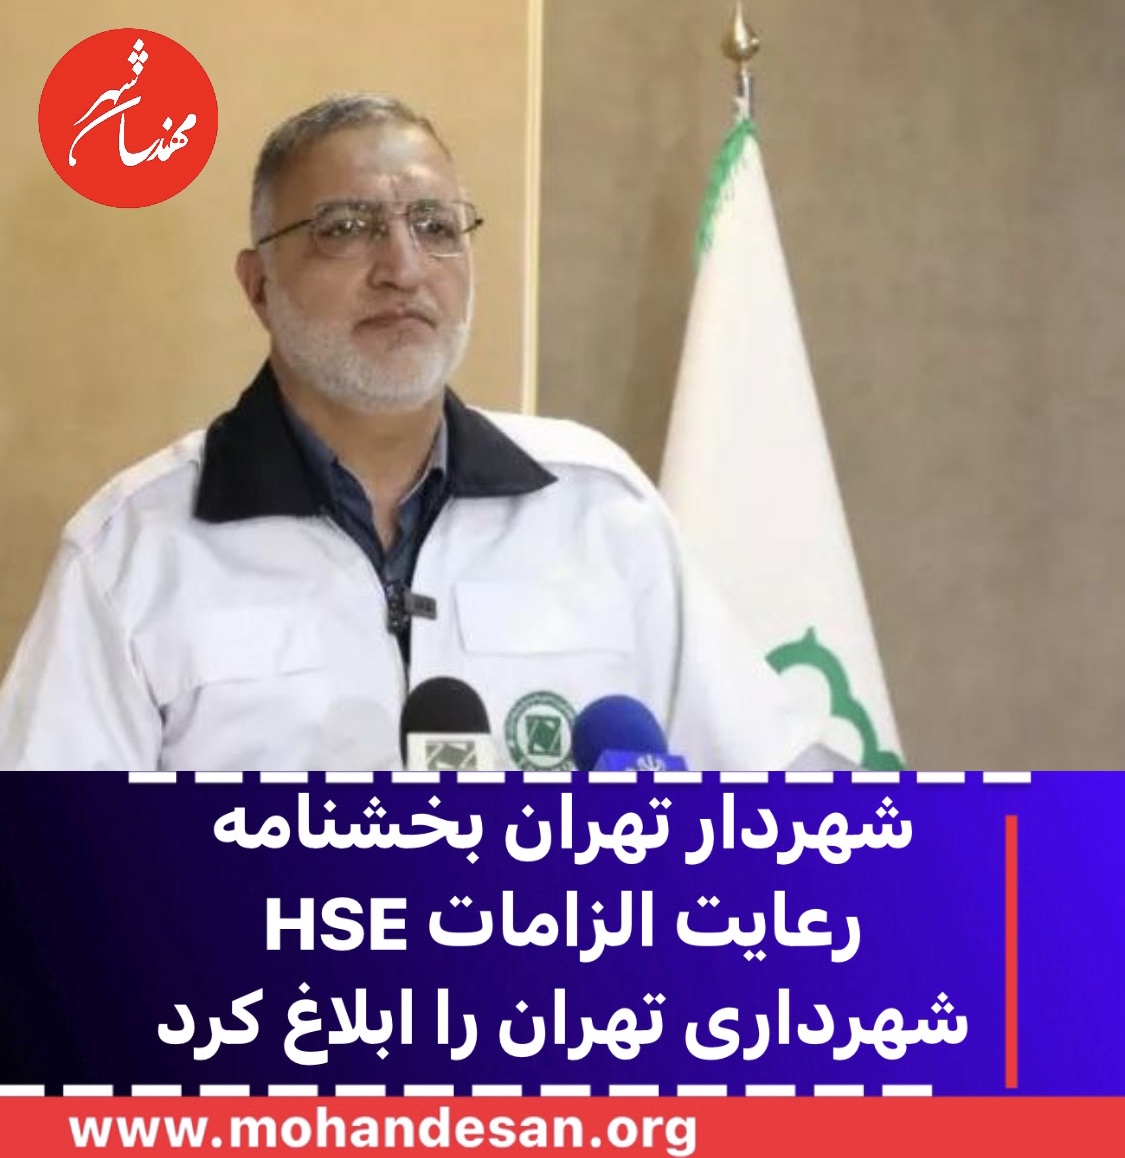 شهردار تهران بخشنامه رعایت الزامات HSE شهرداری تهران را ابلاغ کرد